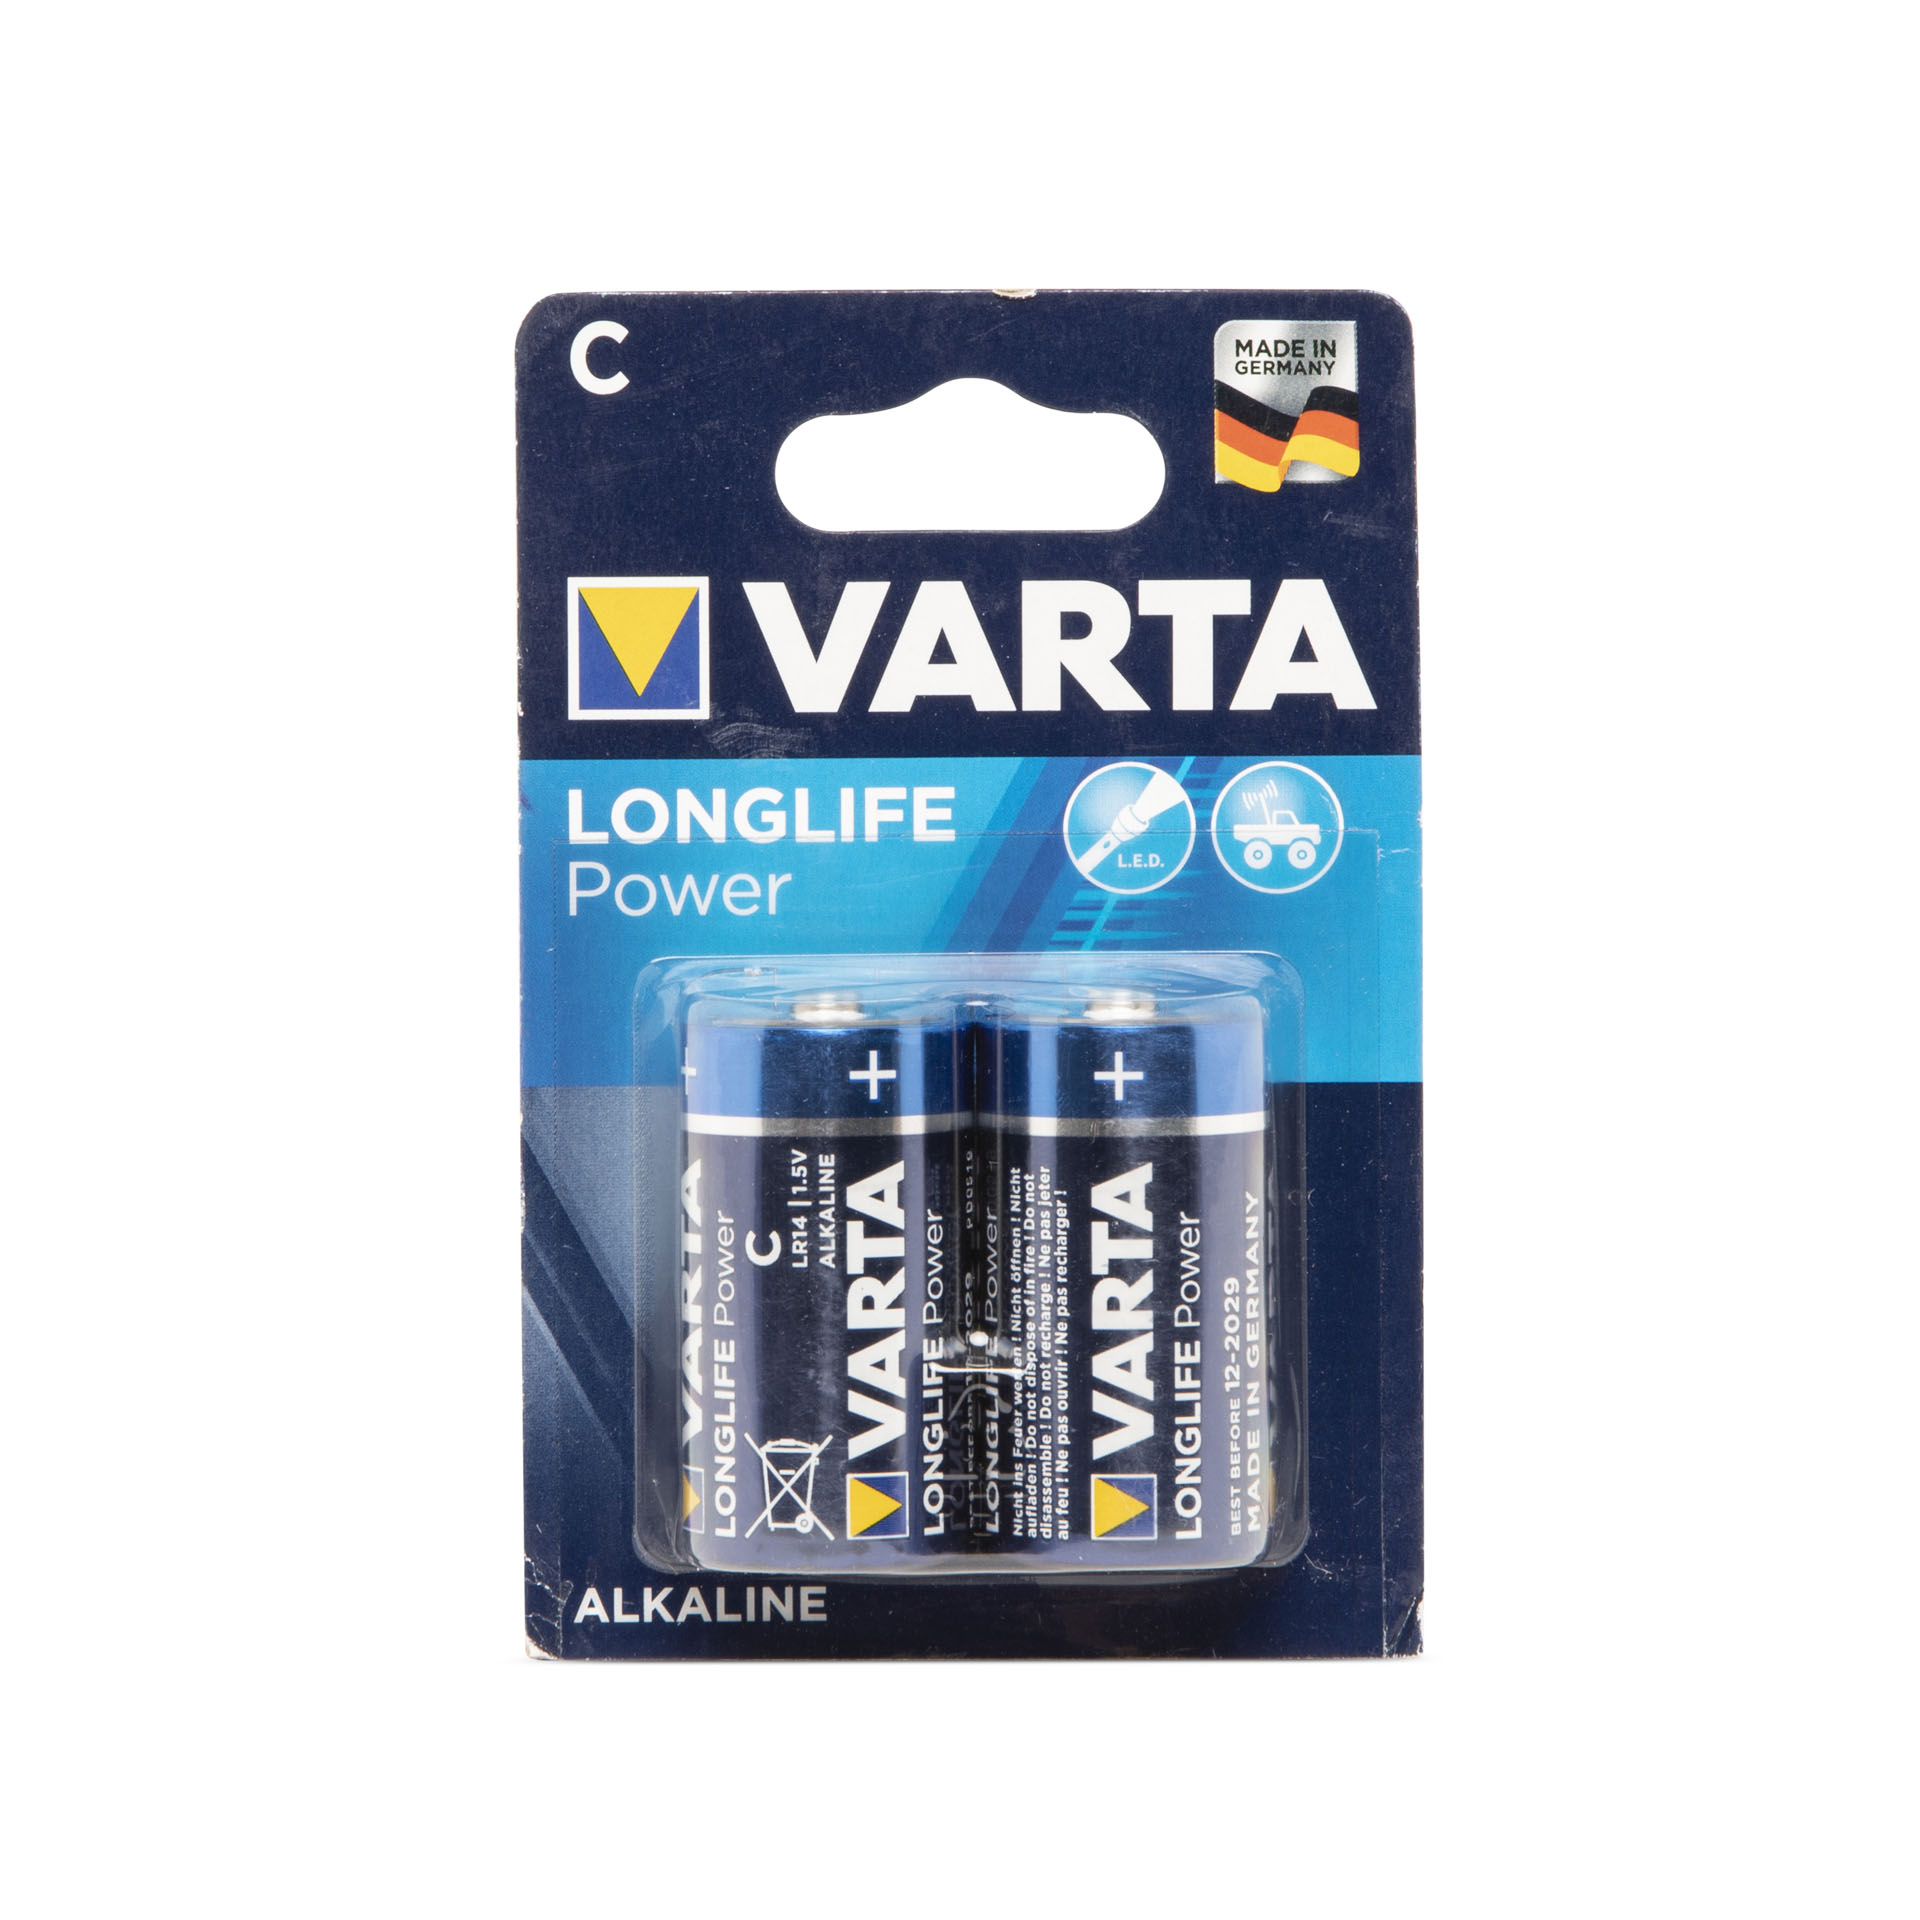 Batterie Varta C (mezza torcia), , large